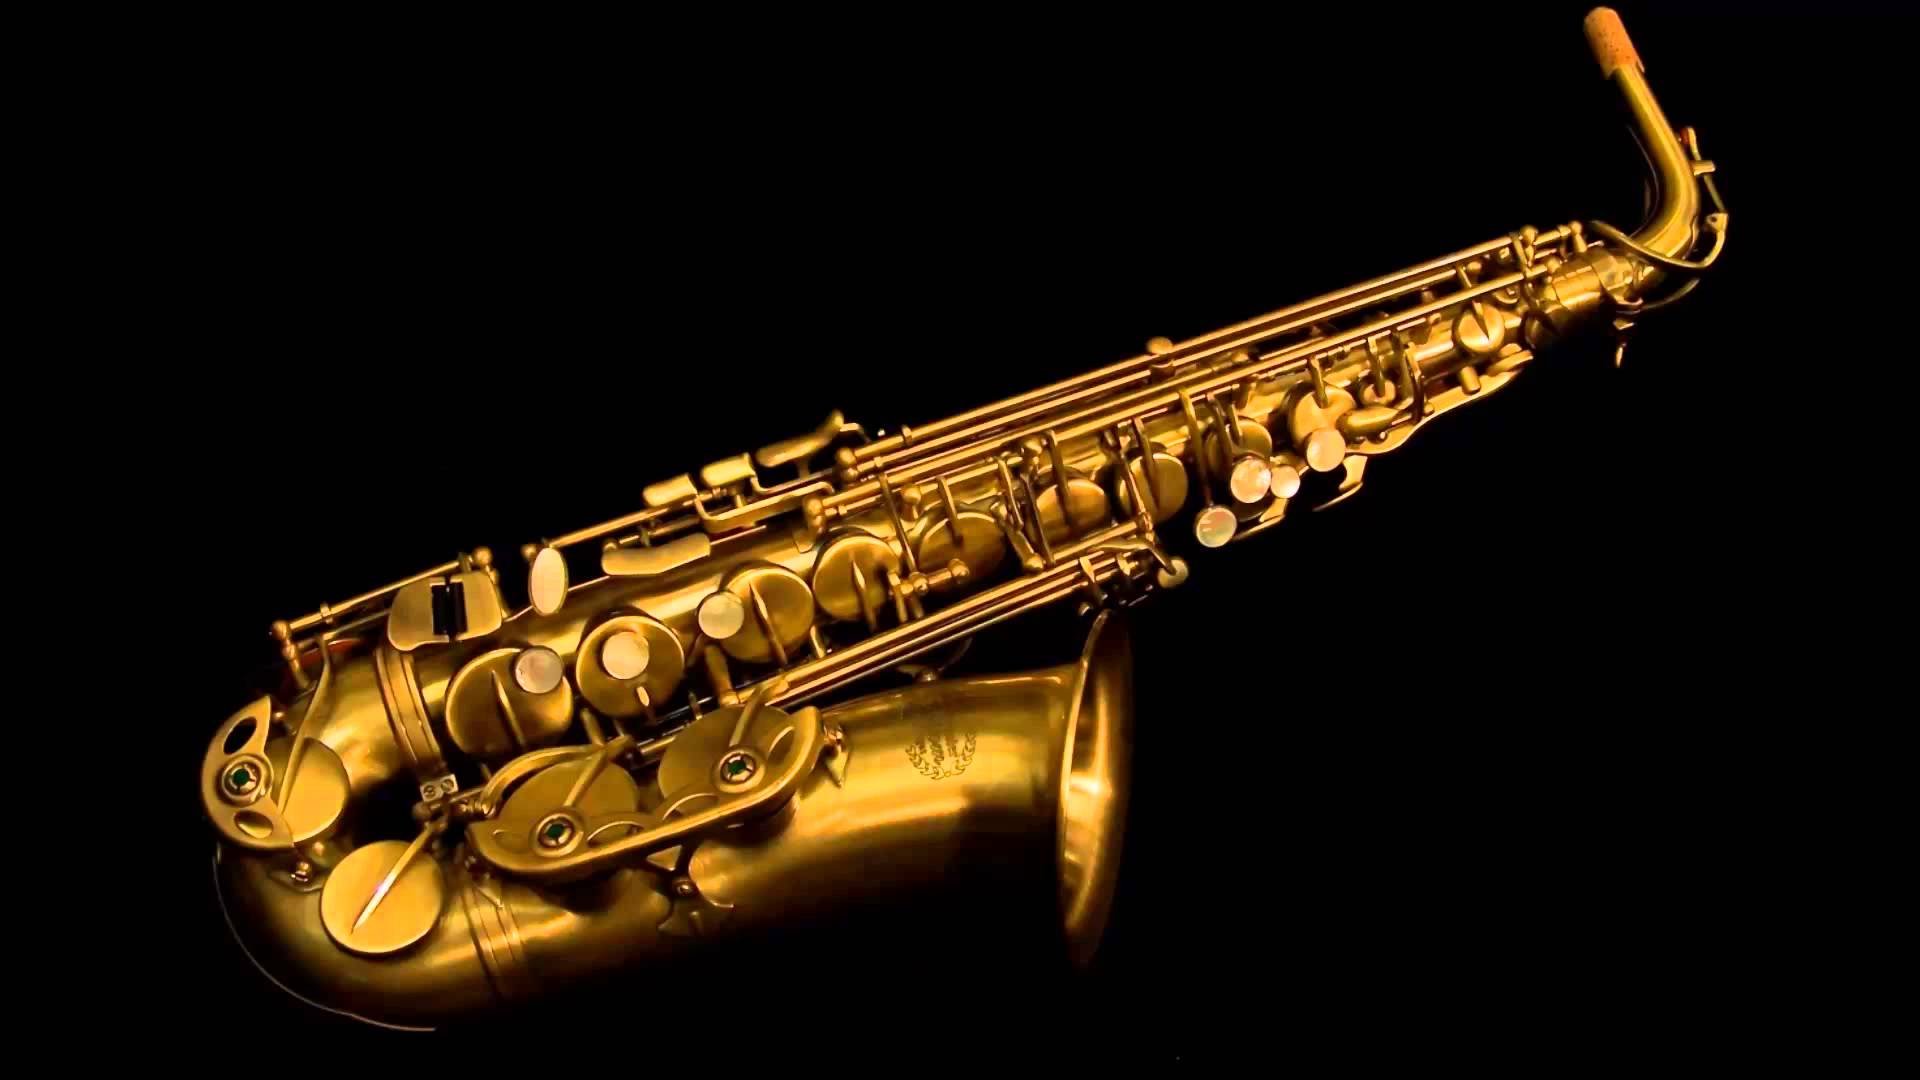 Saxophone jahaziel. Саксофон. Саксофон музыкальный инструмент. Часофон. Старый саксофон.